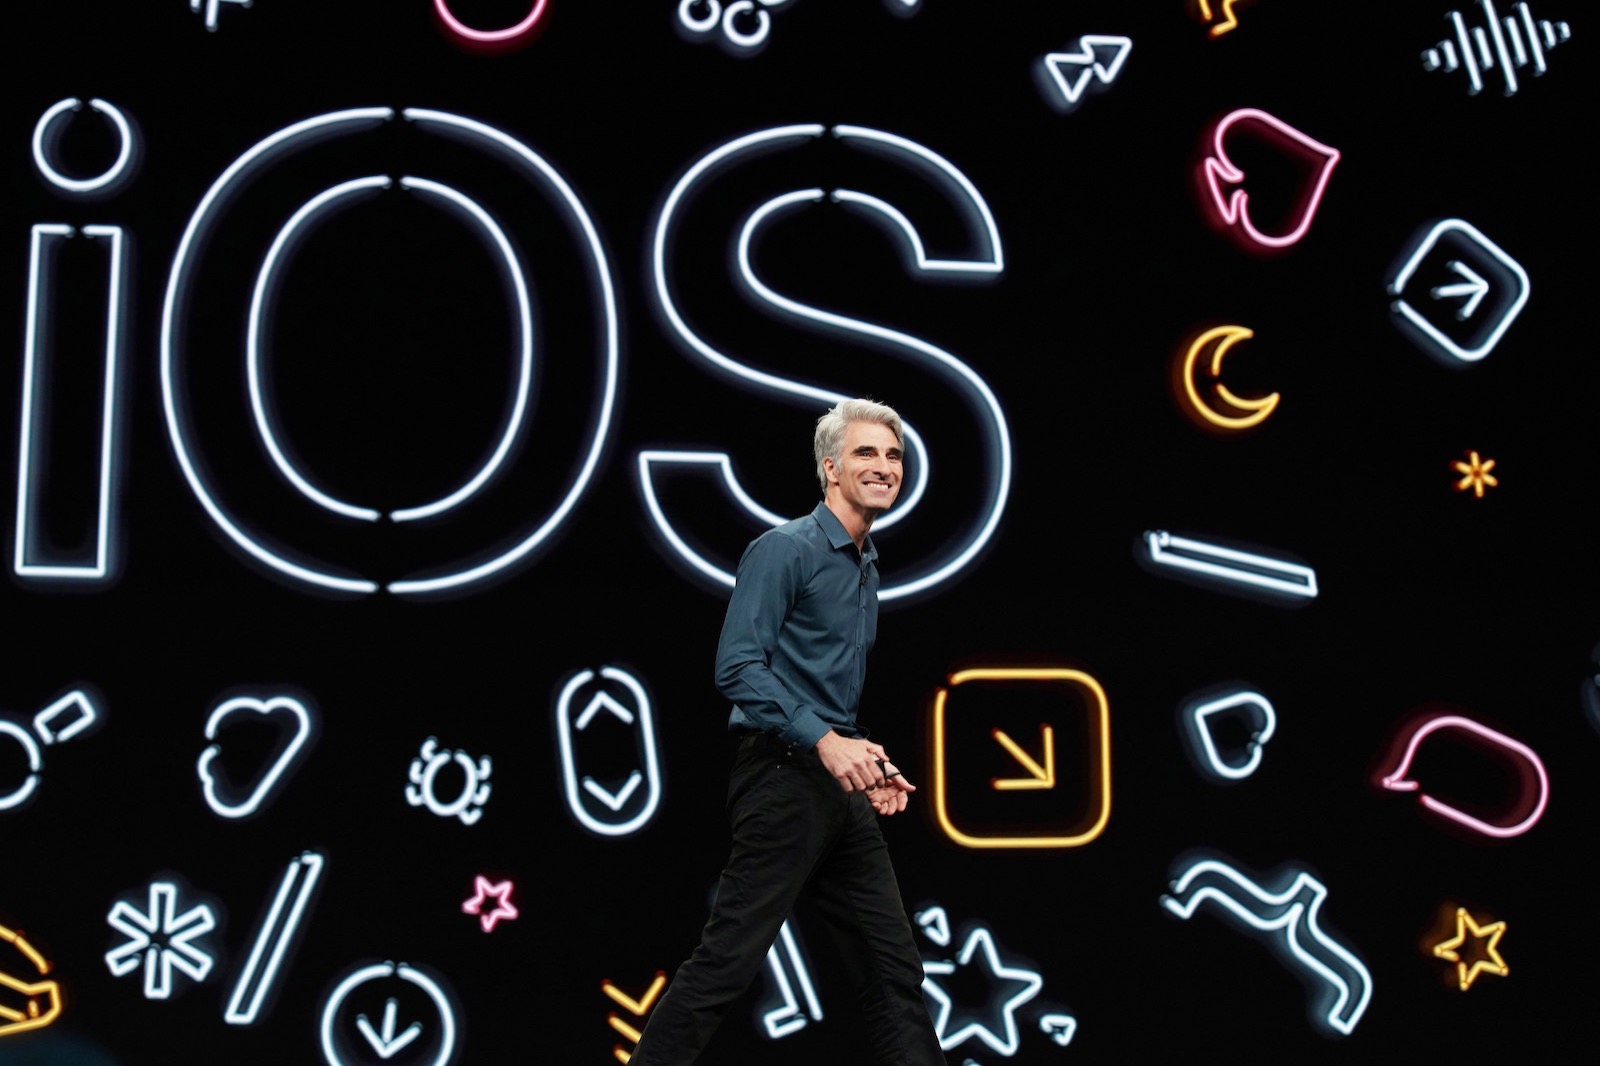 Apple-highlights-from-wwdc19-Craig-Federighi-unveils-iOS13-06032019.jpg